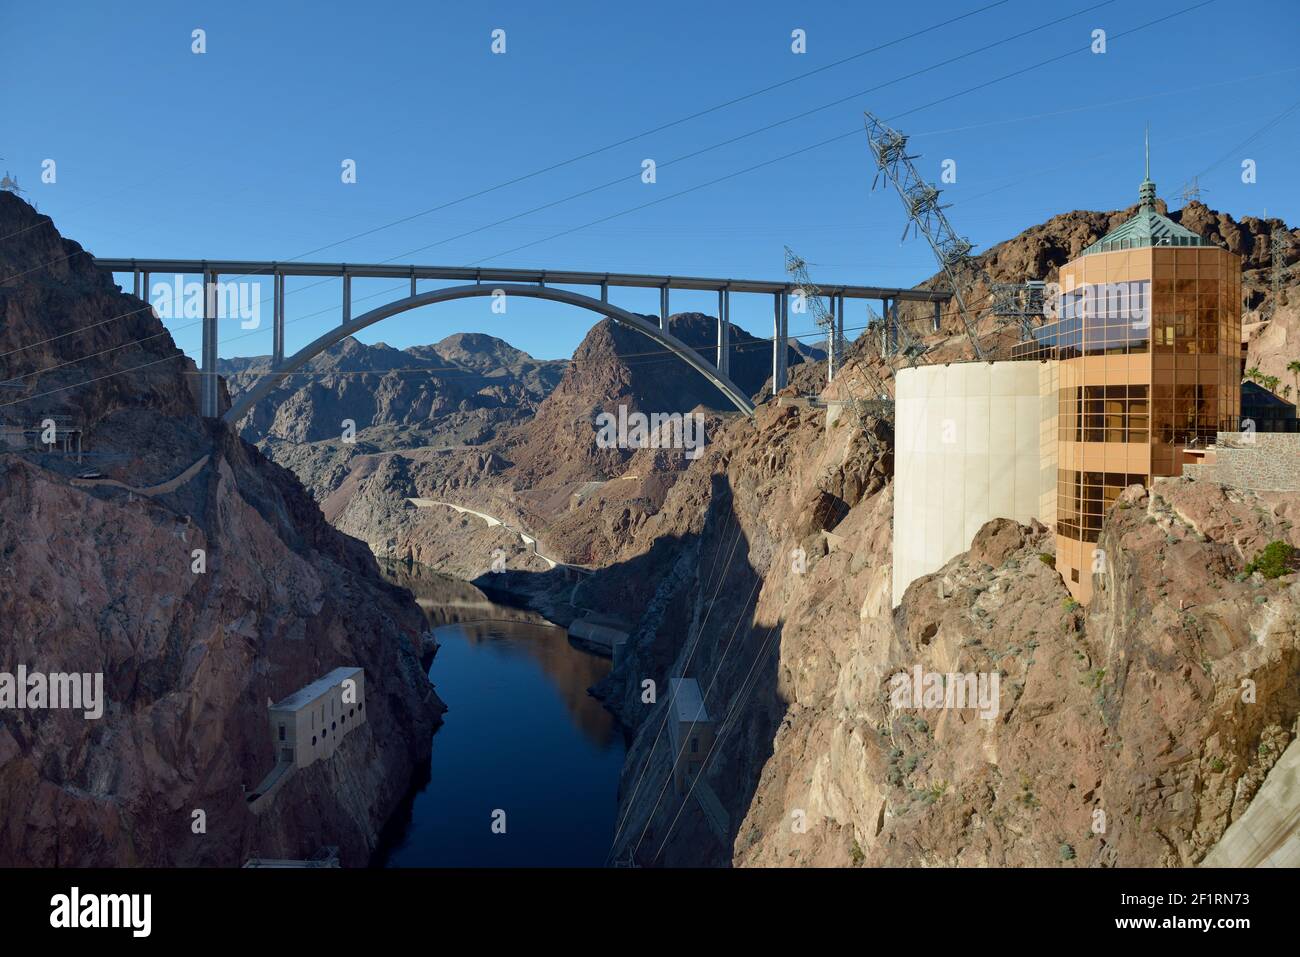 Le centre d'accueil du barrage Hoover et le pont commémoratif Mike O'Callaghan - Pat Tillman, Arizona, Nevada, États-Unis Banque D'Images